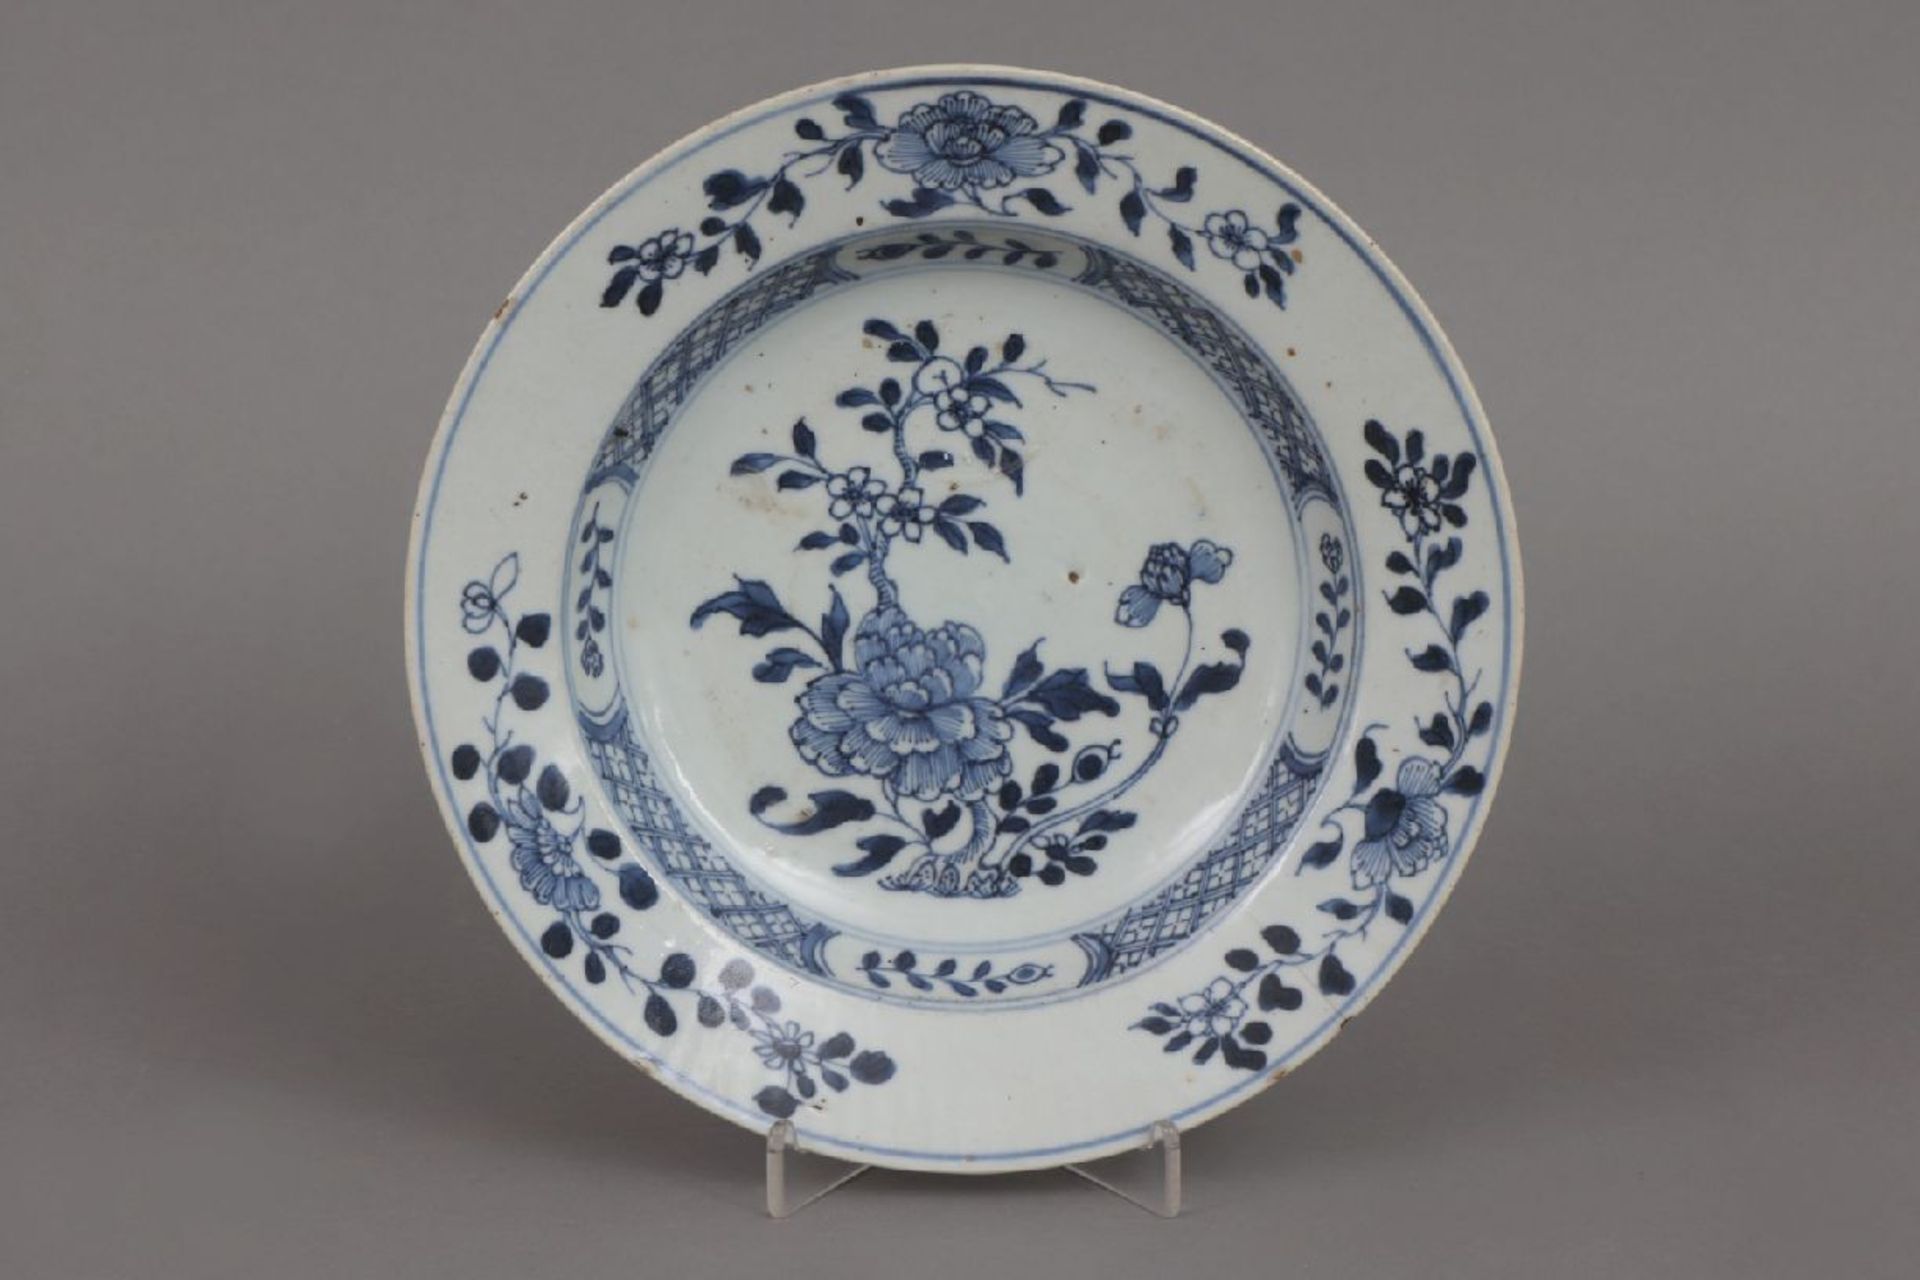 Chinesischer Teller mit Blaumalereiwohl 17./18. Jahrhundert, runder, glatter Teller, im Spiegel